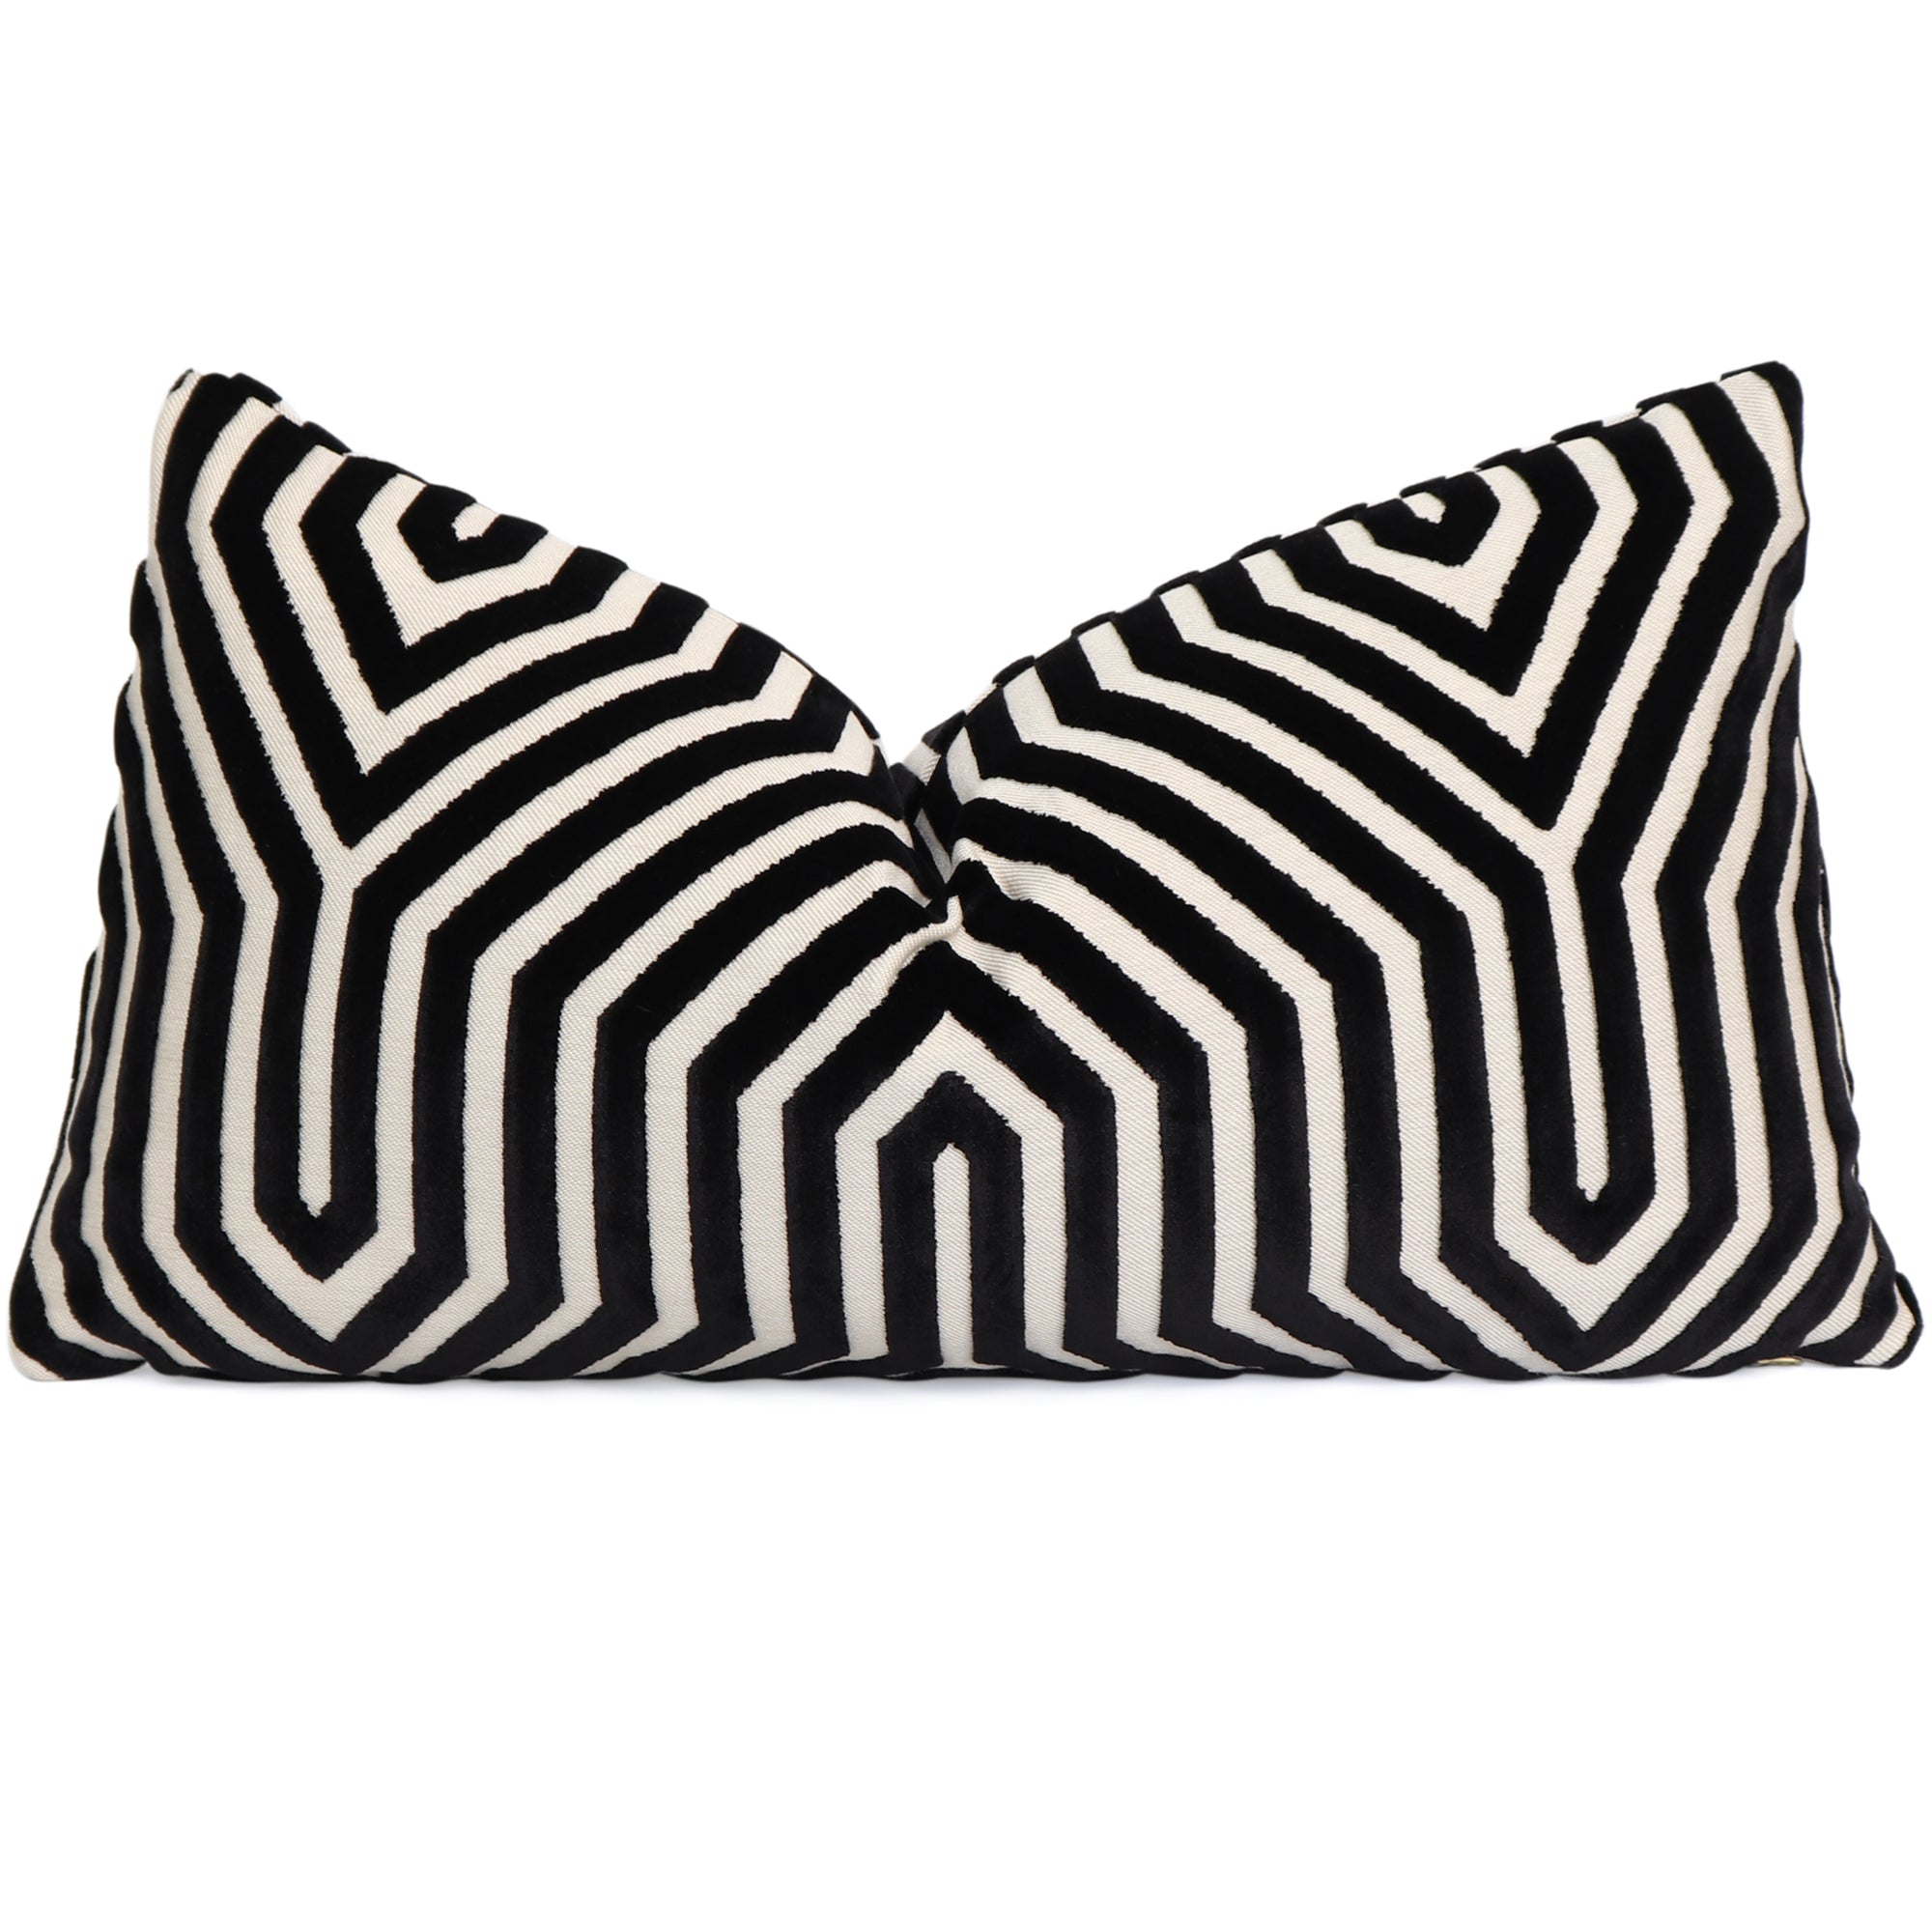 Fabric Black & White Stripe Velvet Fabric, for Upholstery, Cushion,  Drapery, Bedding, Slip Cover, 